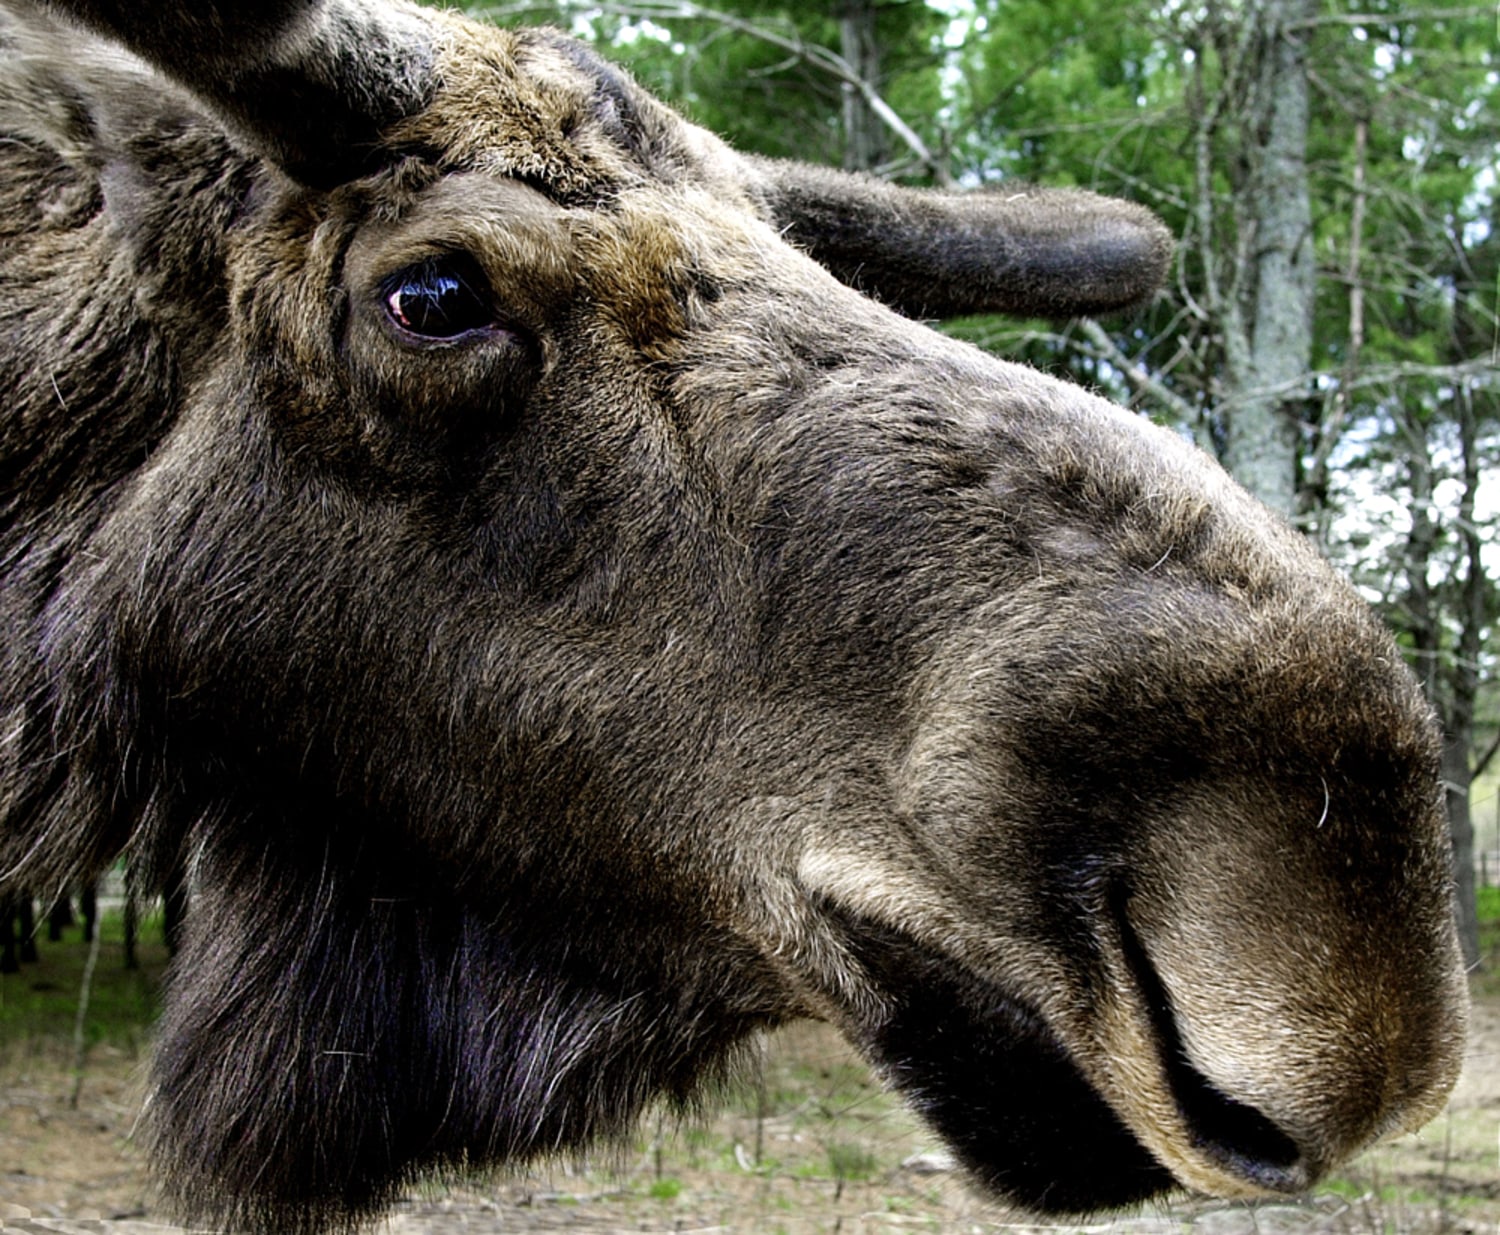 How do you explain a moose's muzzle?